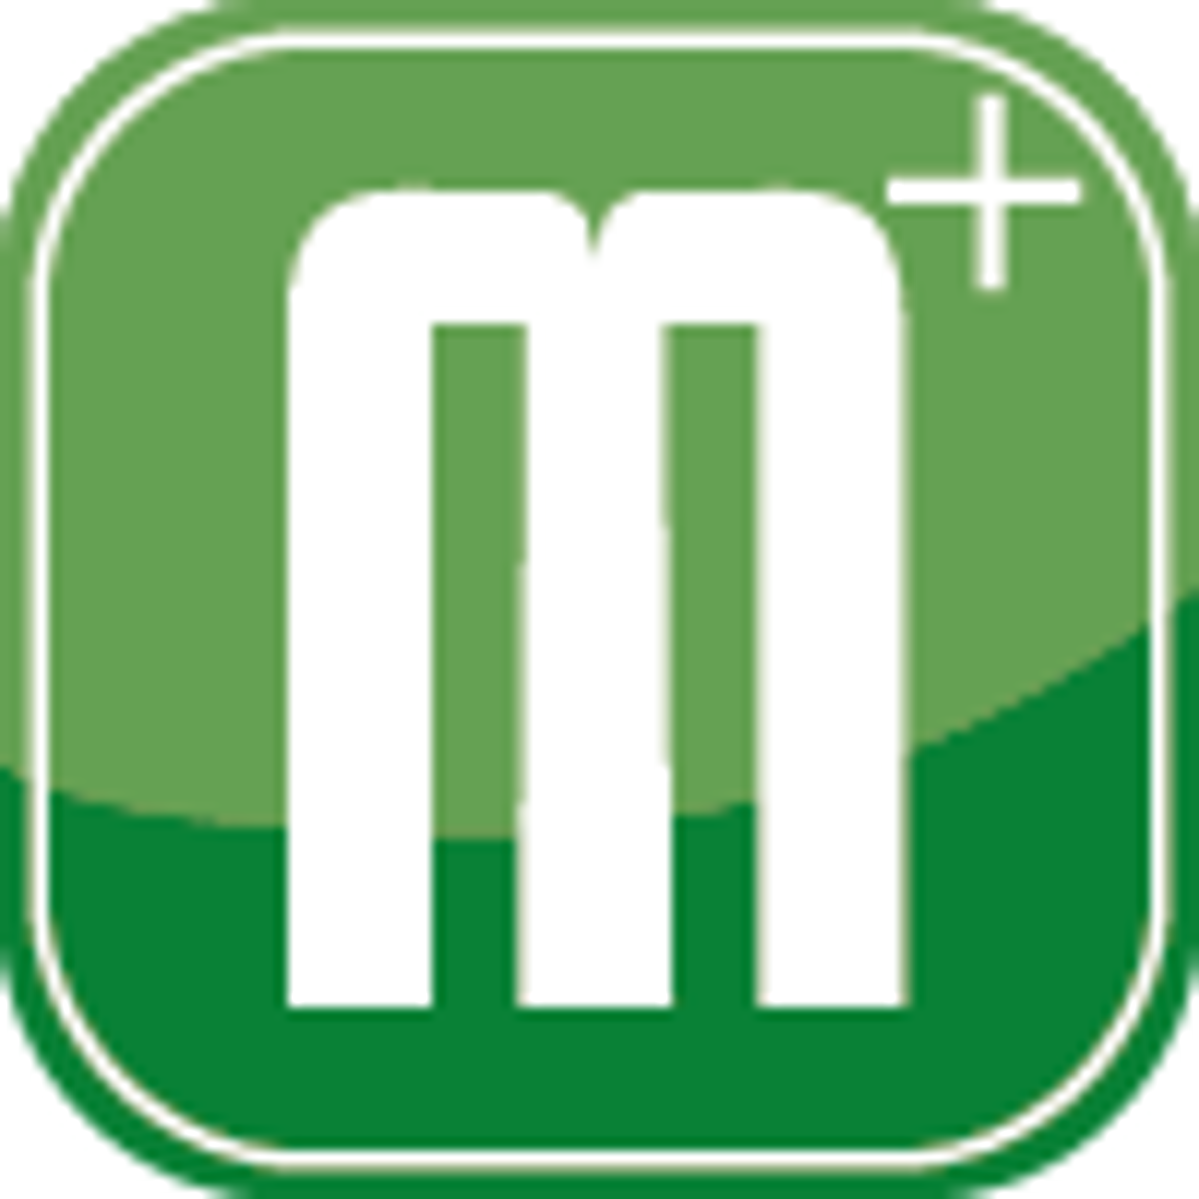 Das Logo von "Maerkerplus", ein hellgrünes Quadrat mit einem weißen "m+" darauf.